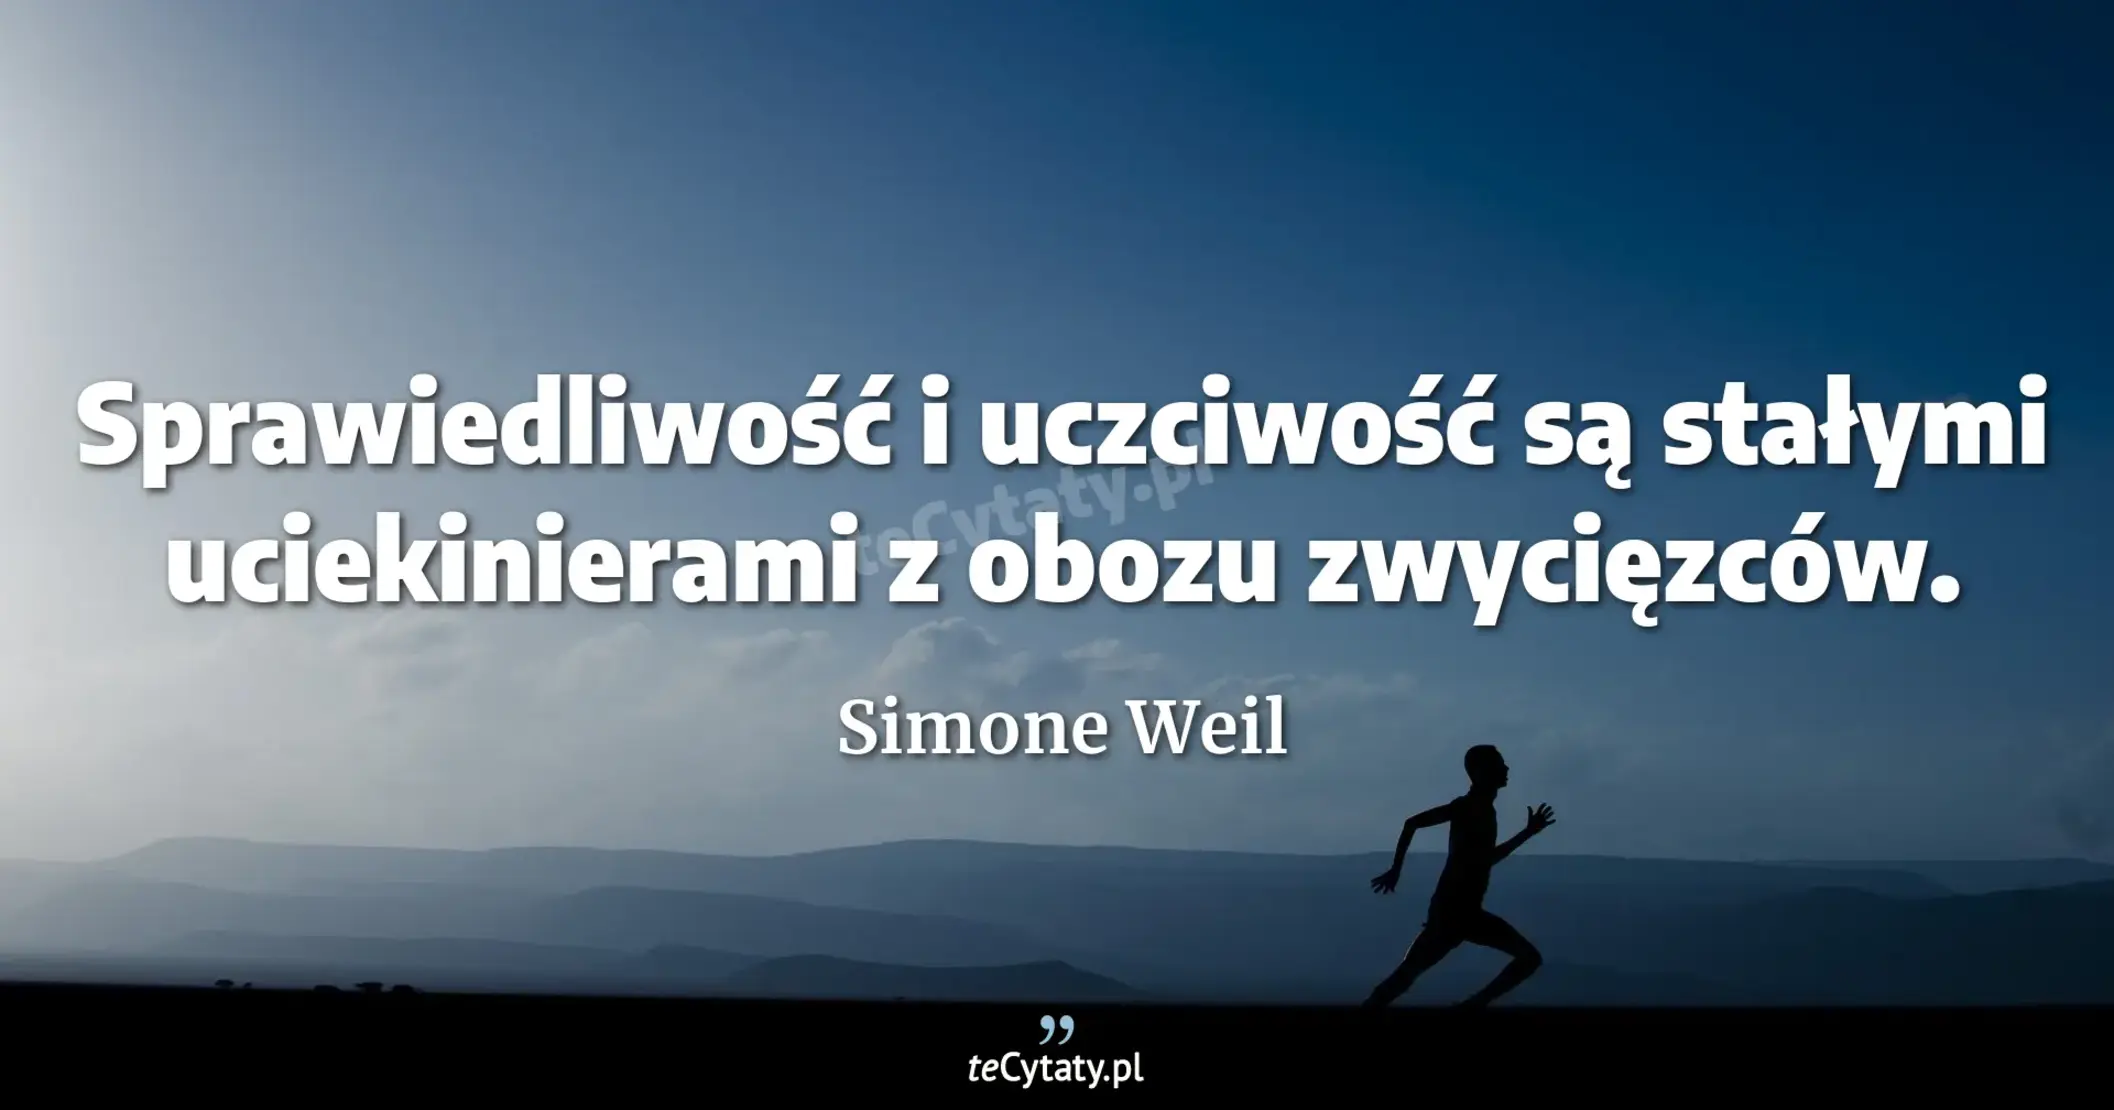 Sprawiedliwość i uczciwość są stałymi uciekinierami z obozu zwycięzców. - Simone Weil